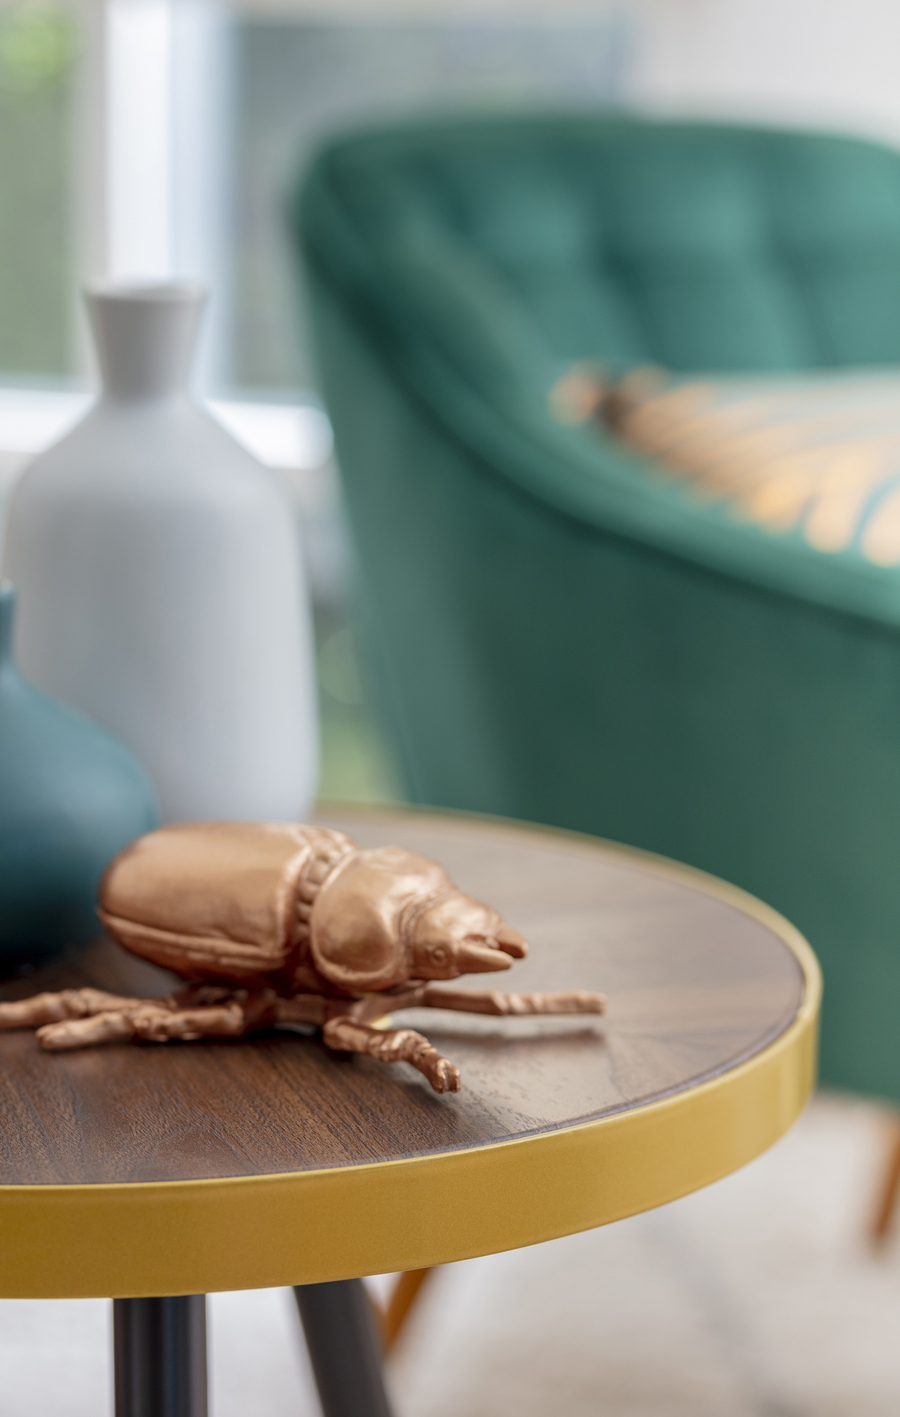 Detalle de una mesa lateral de madera, sobre la cual hay un adorno de un escarabajo dorado. Atrás se ve un jarrón blanco y un sitial color verde